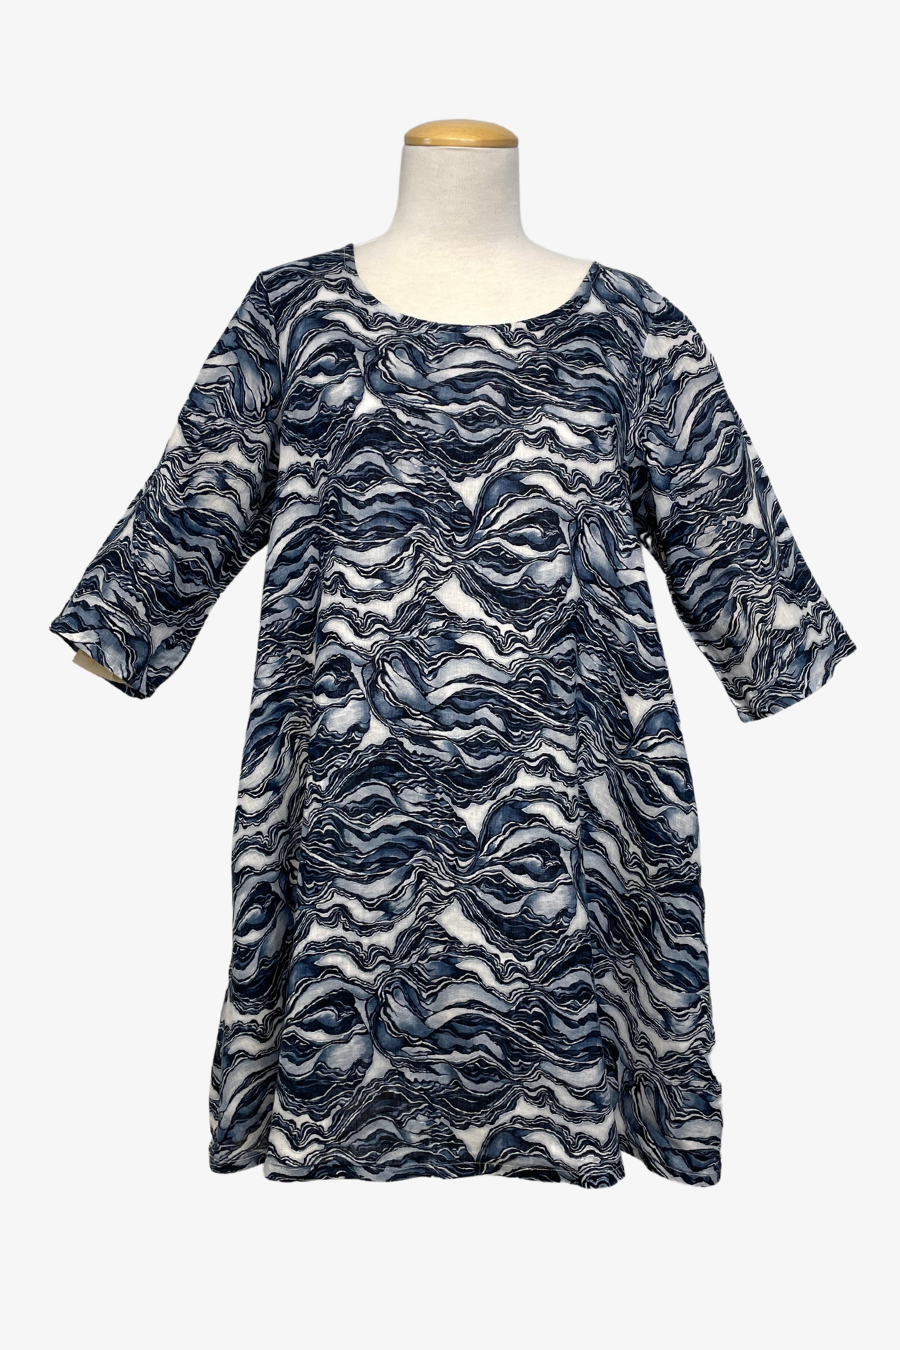 Hopper Dress in Strati Print Linen